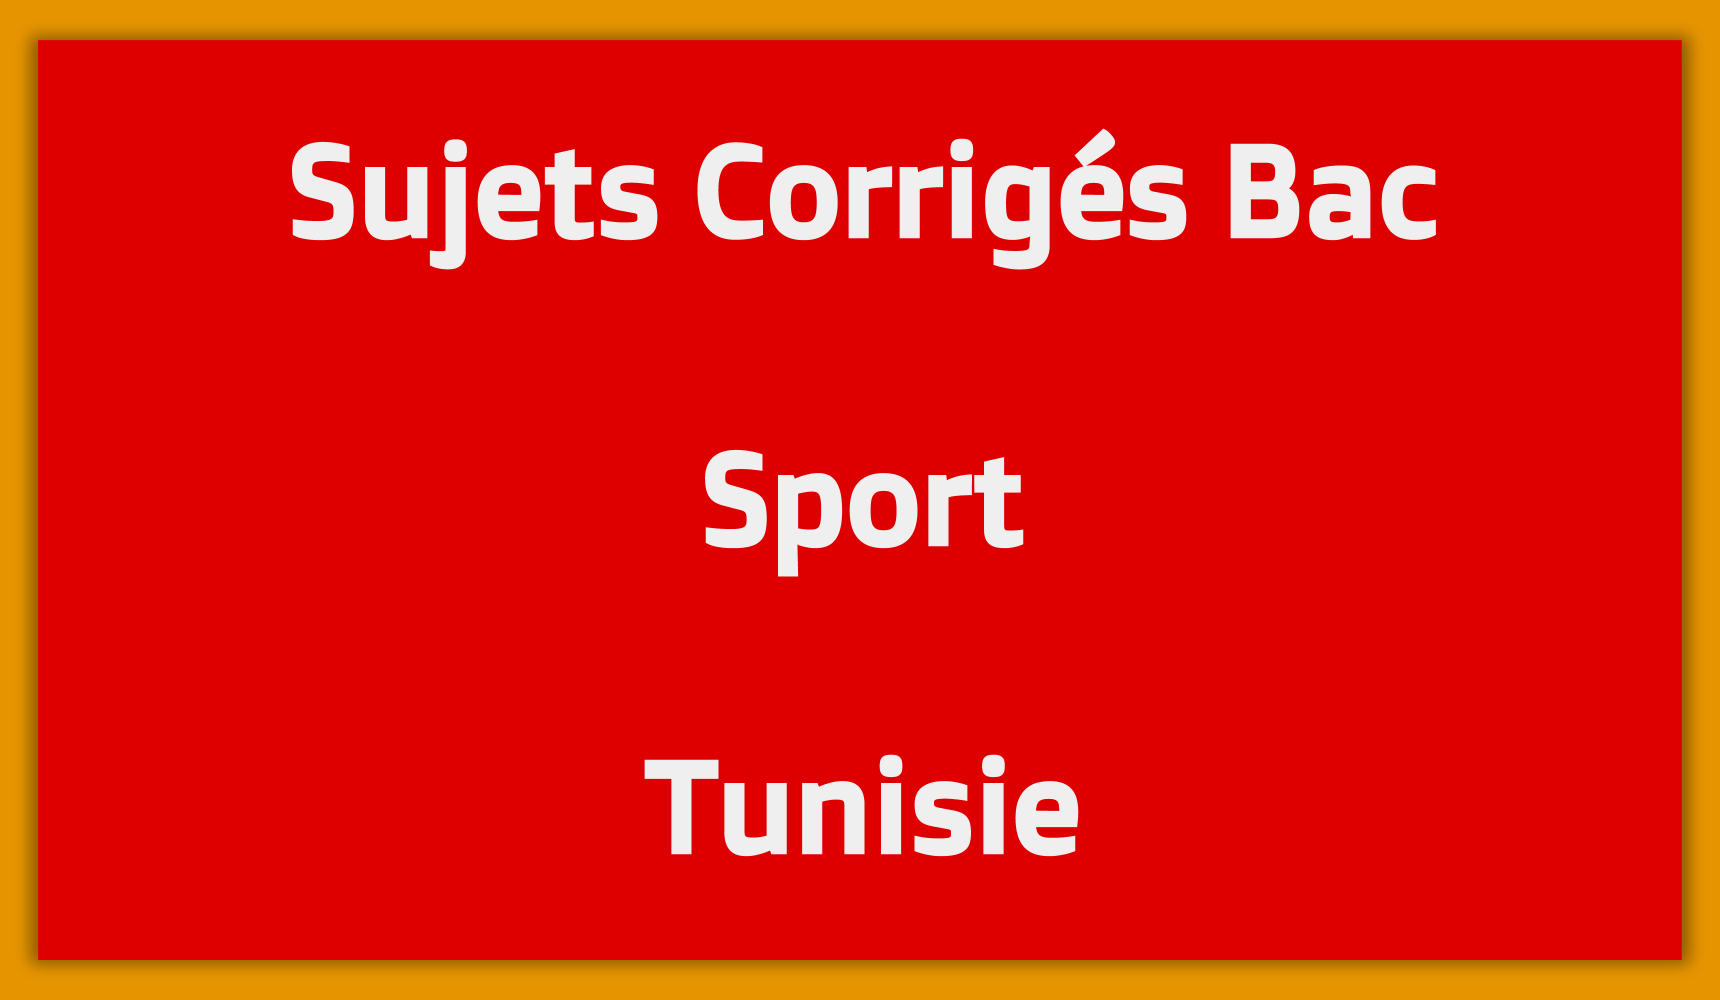 Sujets Corrigés Bac Sport Tunisie